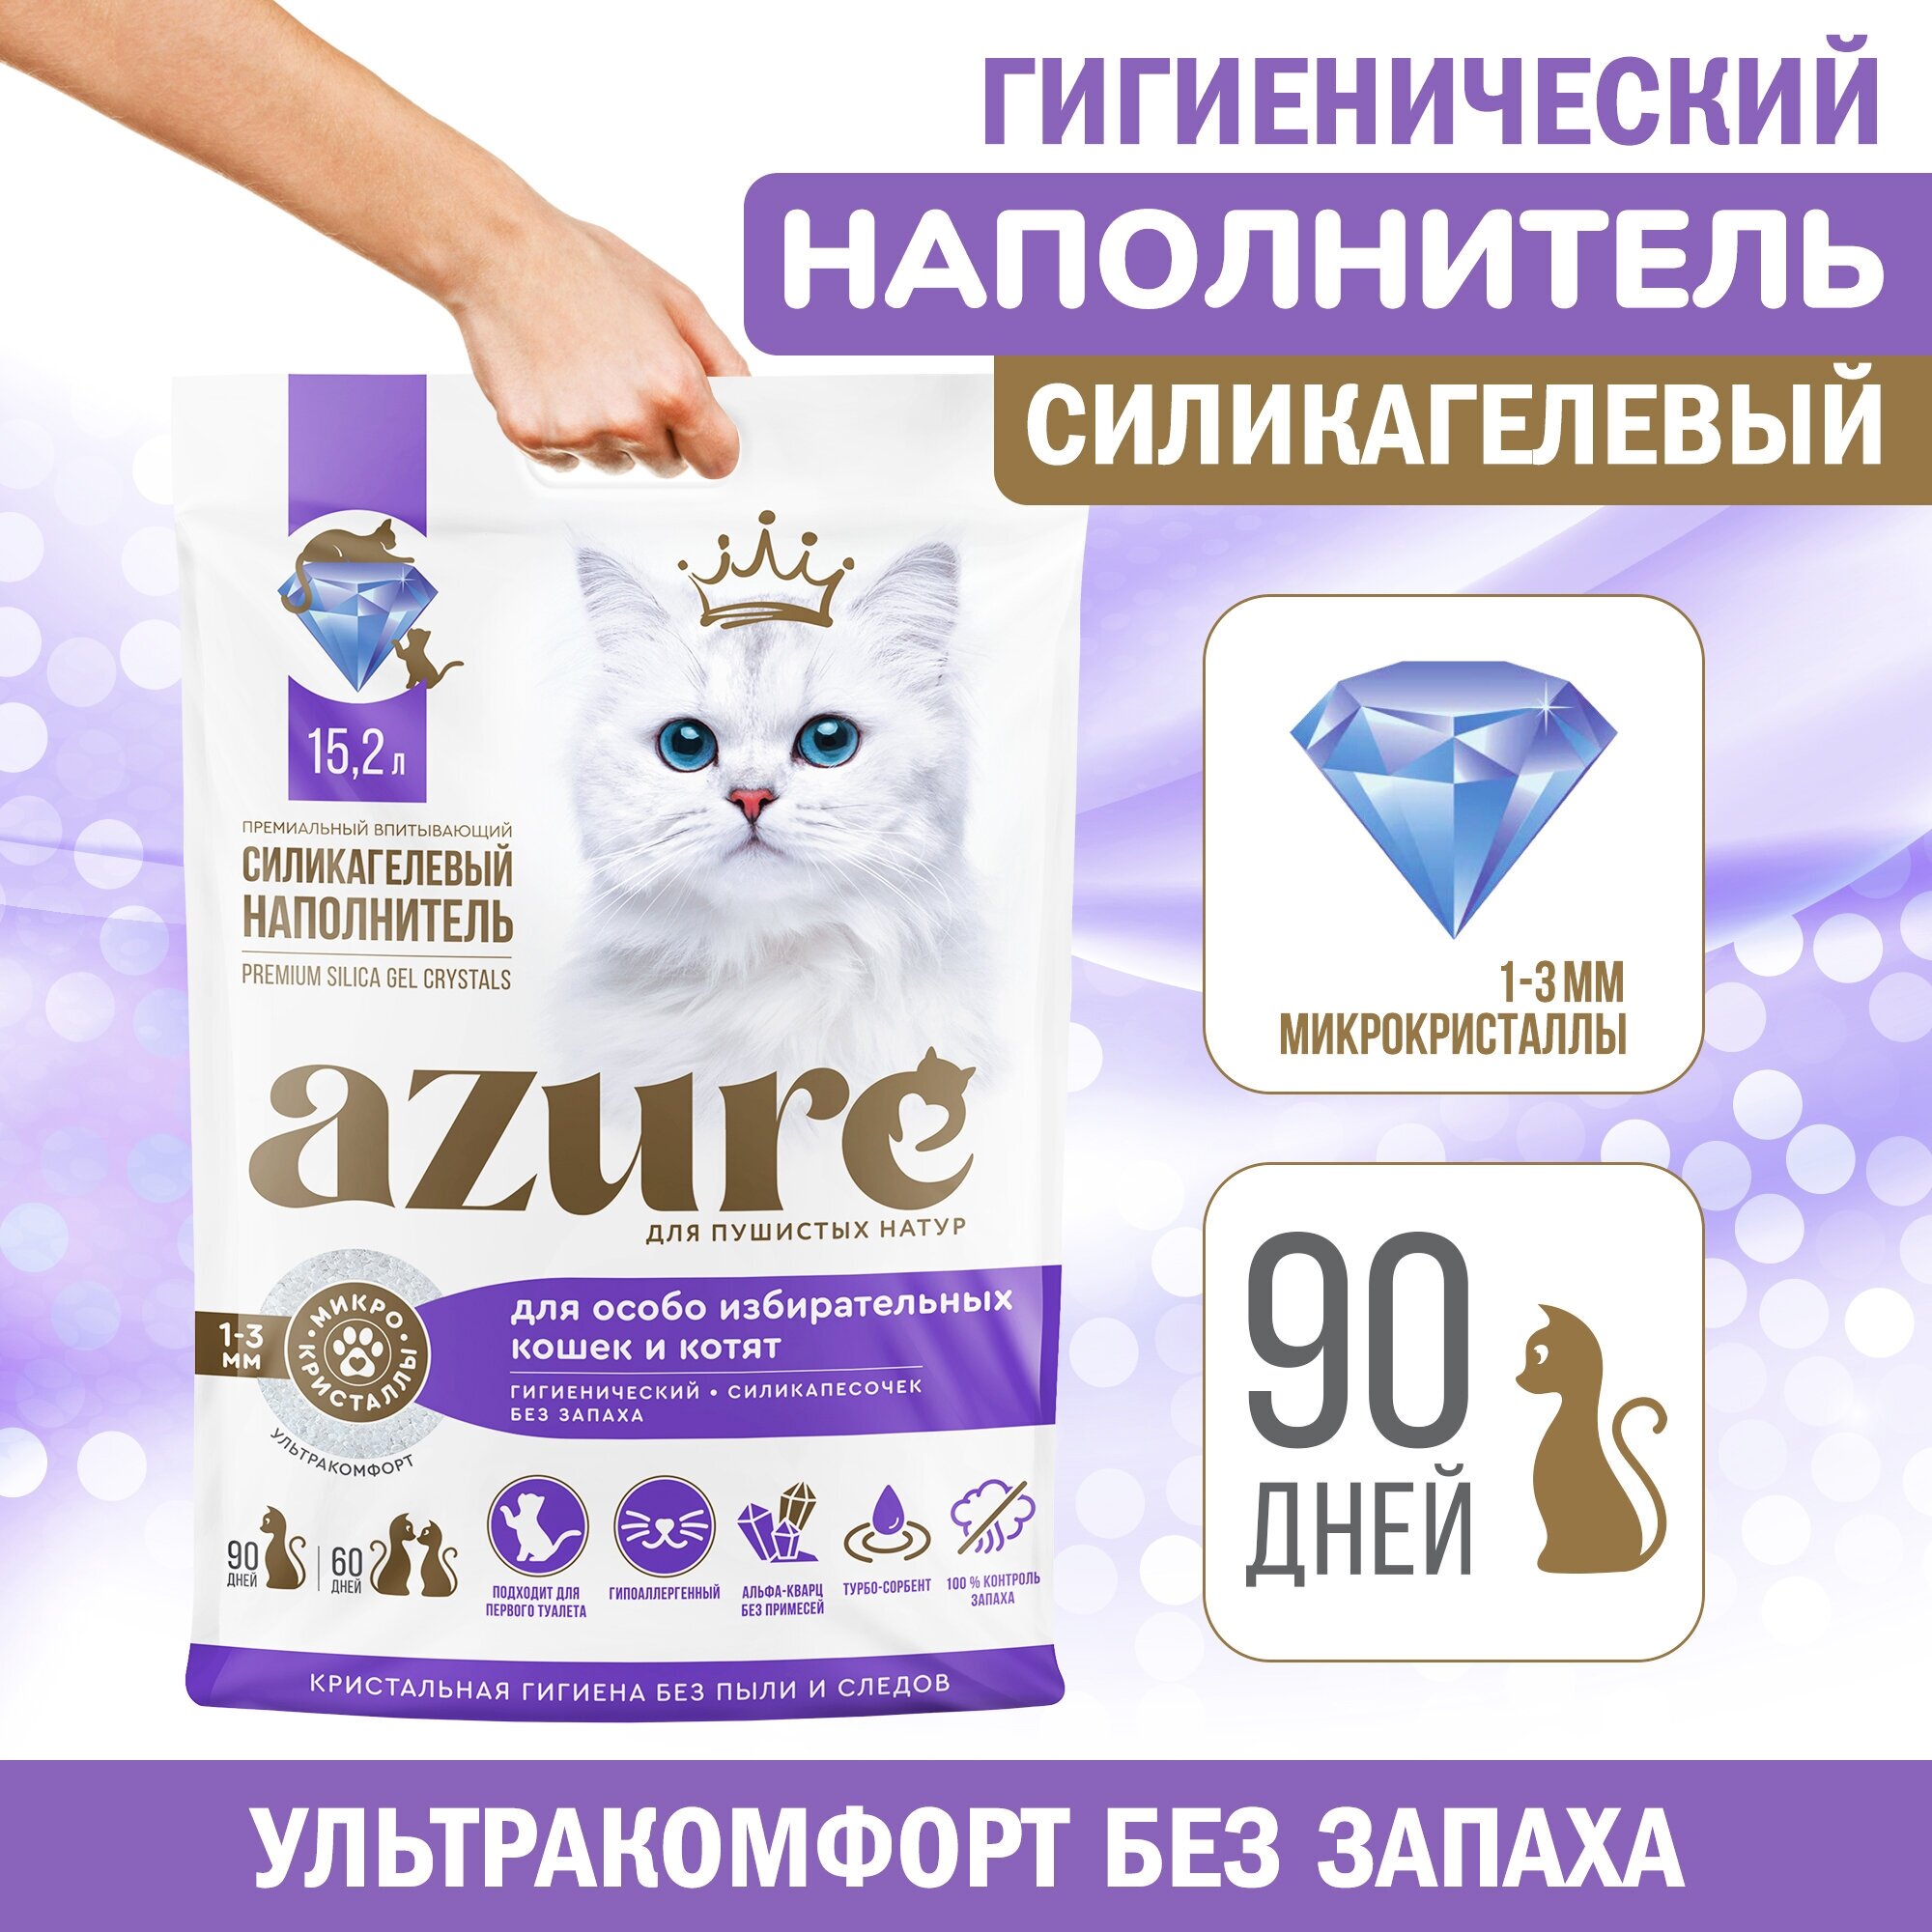 Наполнитель Azure для кошачьего туалета силикагелевый, впитывающий, кристаллический, для избирательных кошек, гигиенический, без запаха 15,2 л.